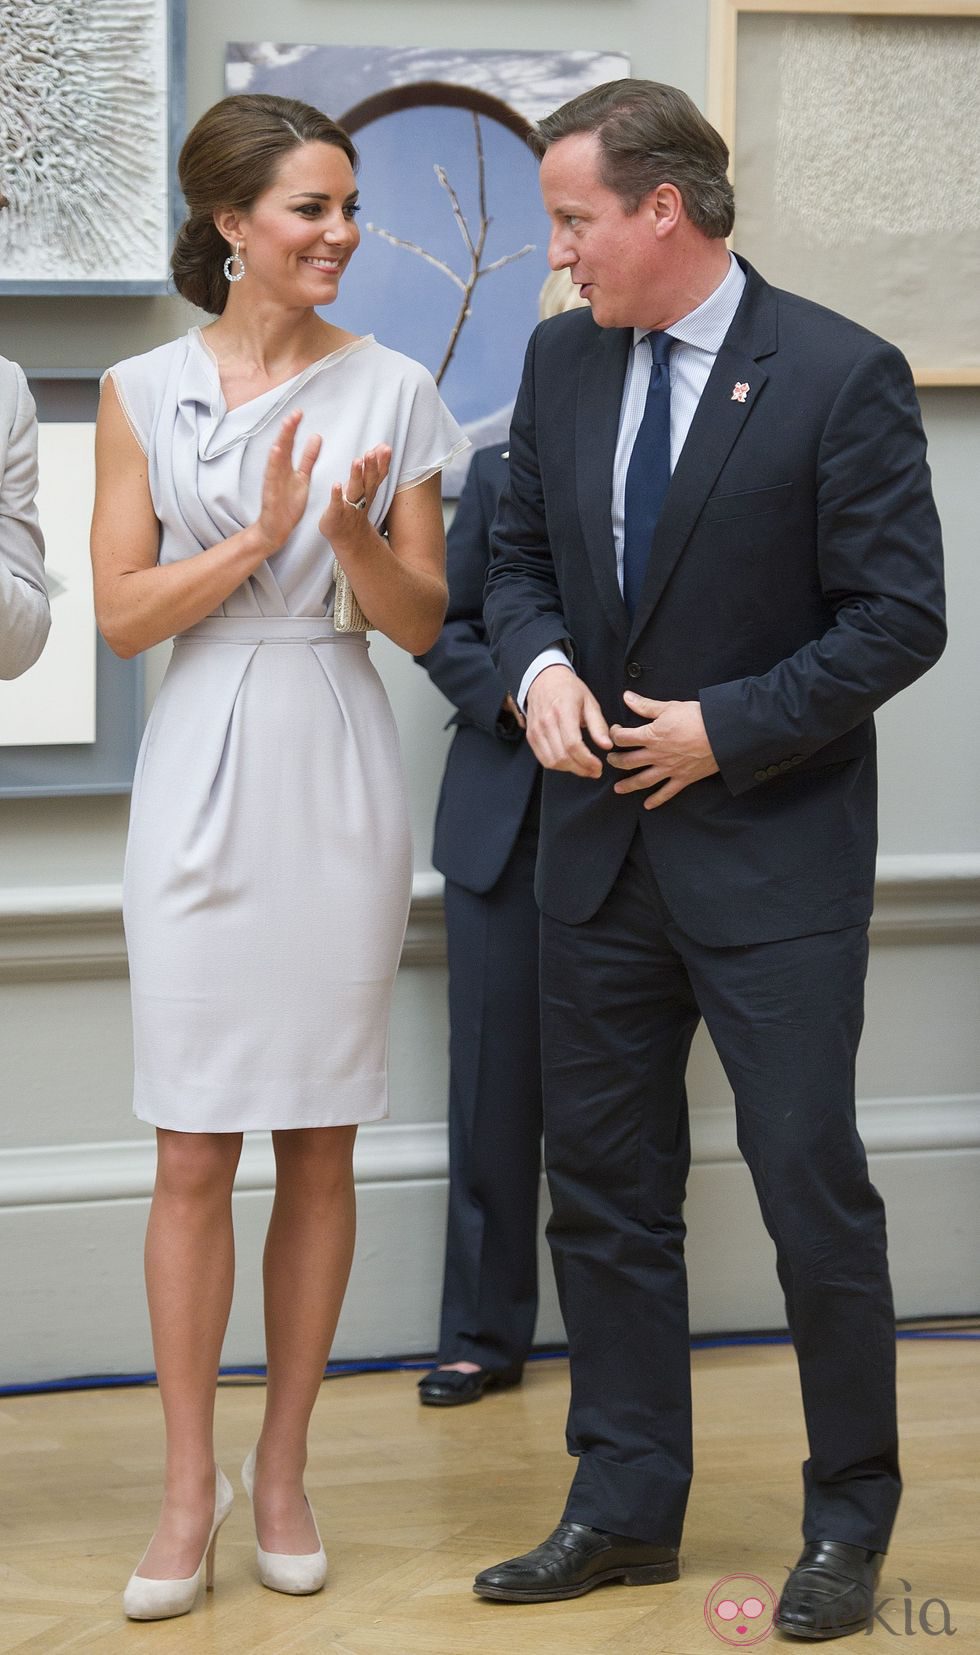 La Duquesa de Cambridge y David Cameron en la gala de la Royal Art Academy